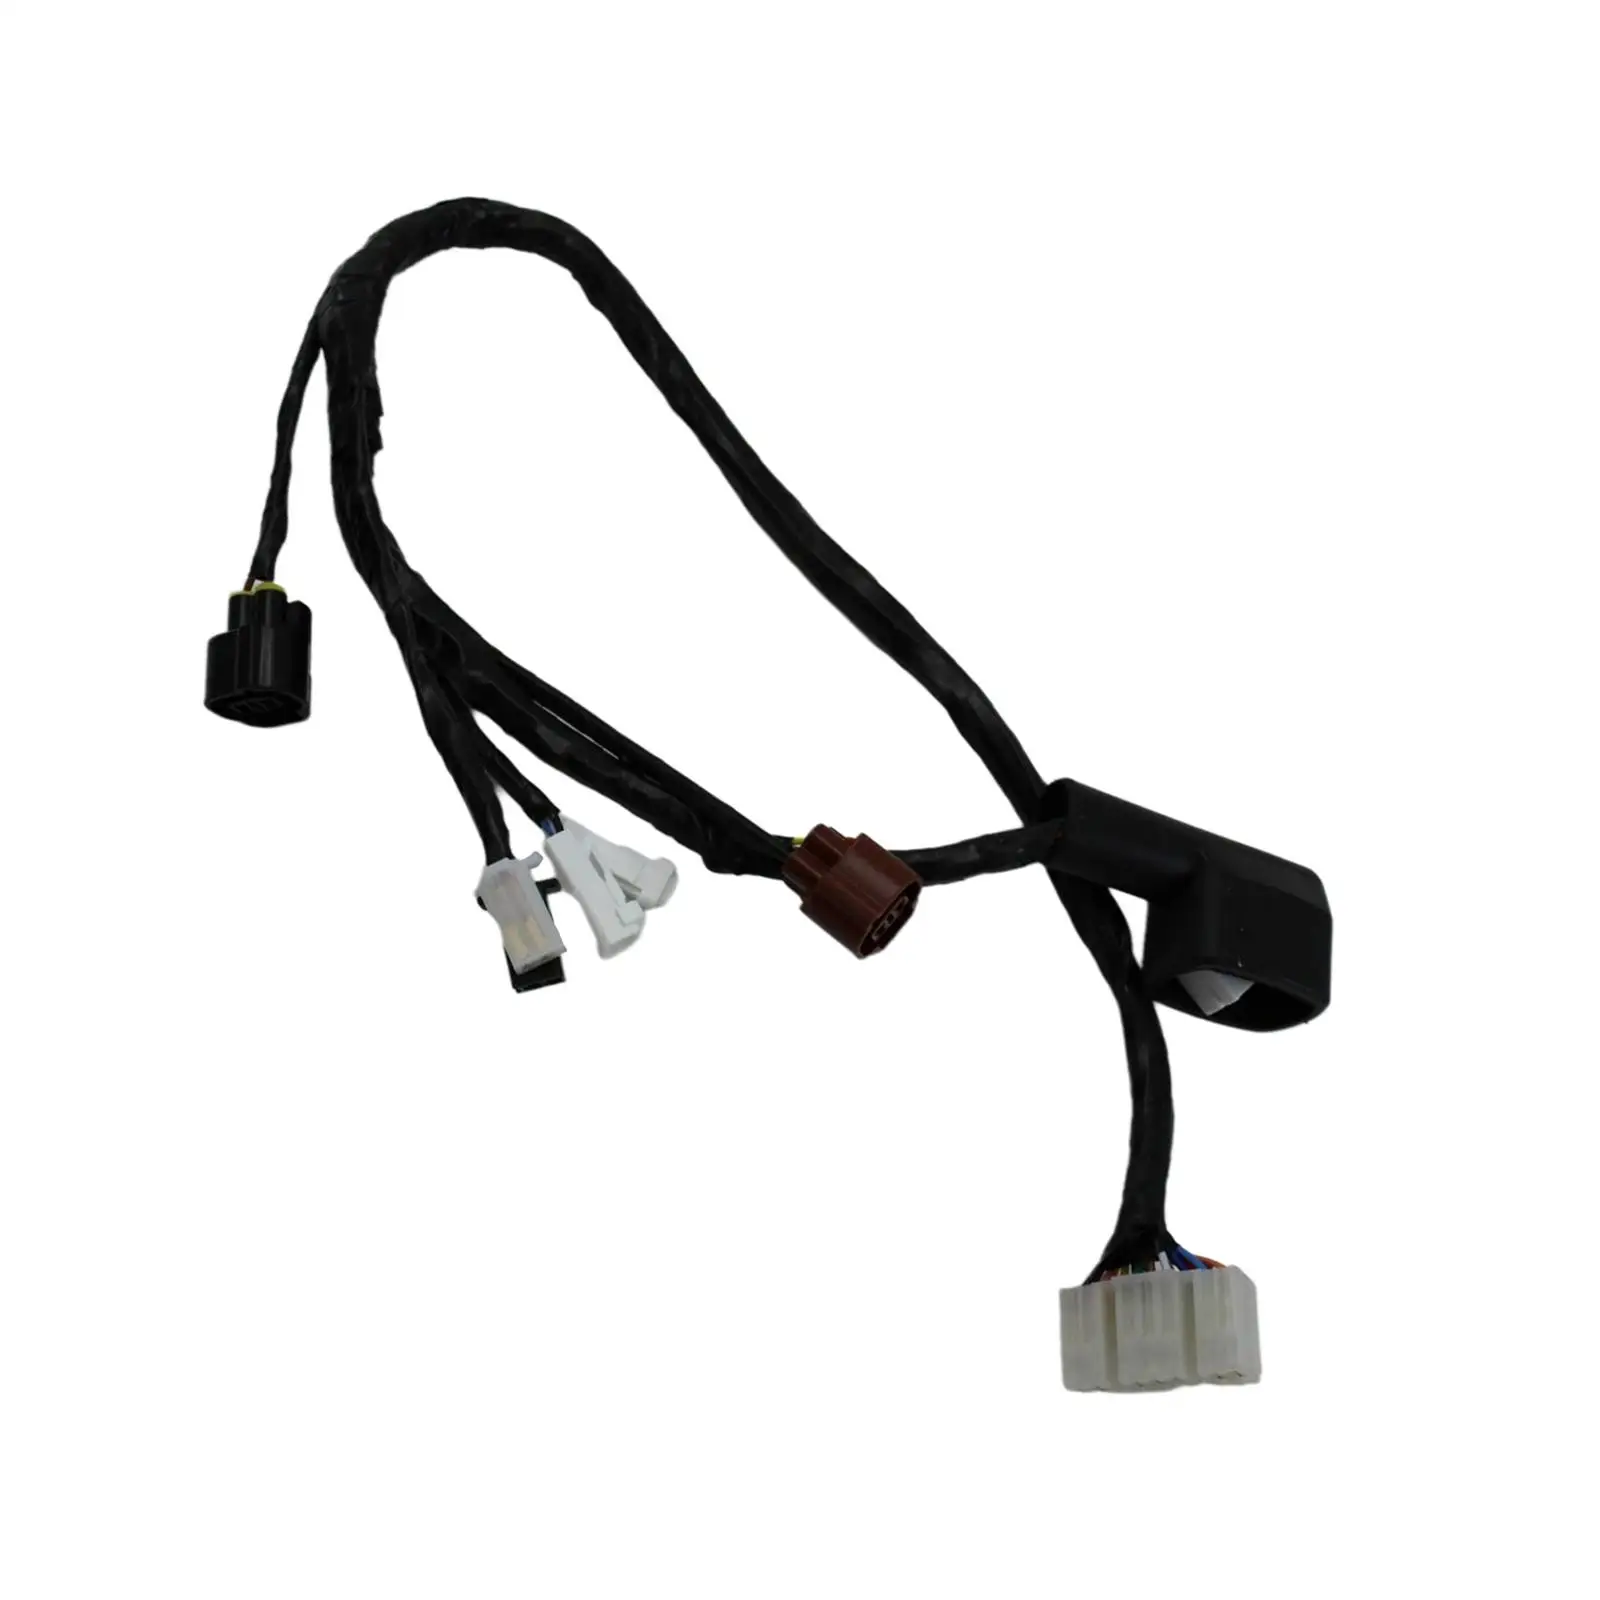 Headlight Wire Harness Set fits for Suzuki GSXR 1000 05-06 36620-41G00, High Performance